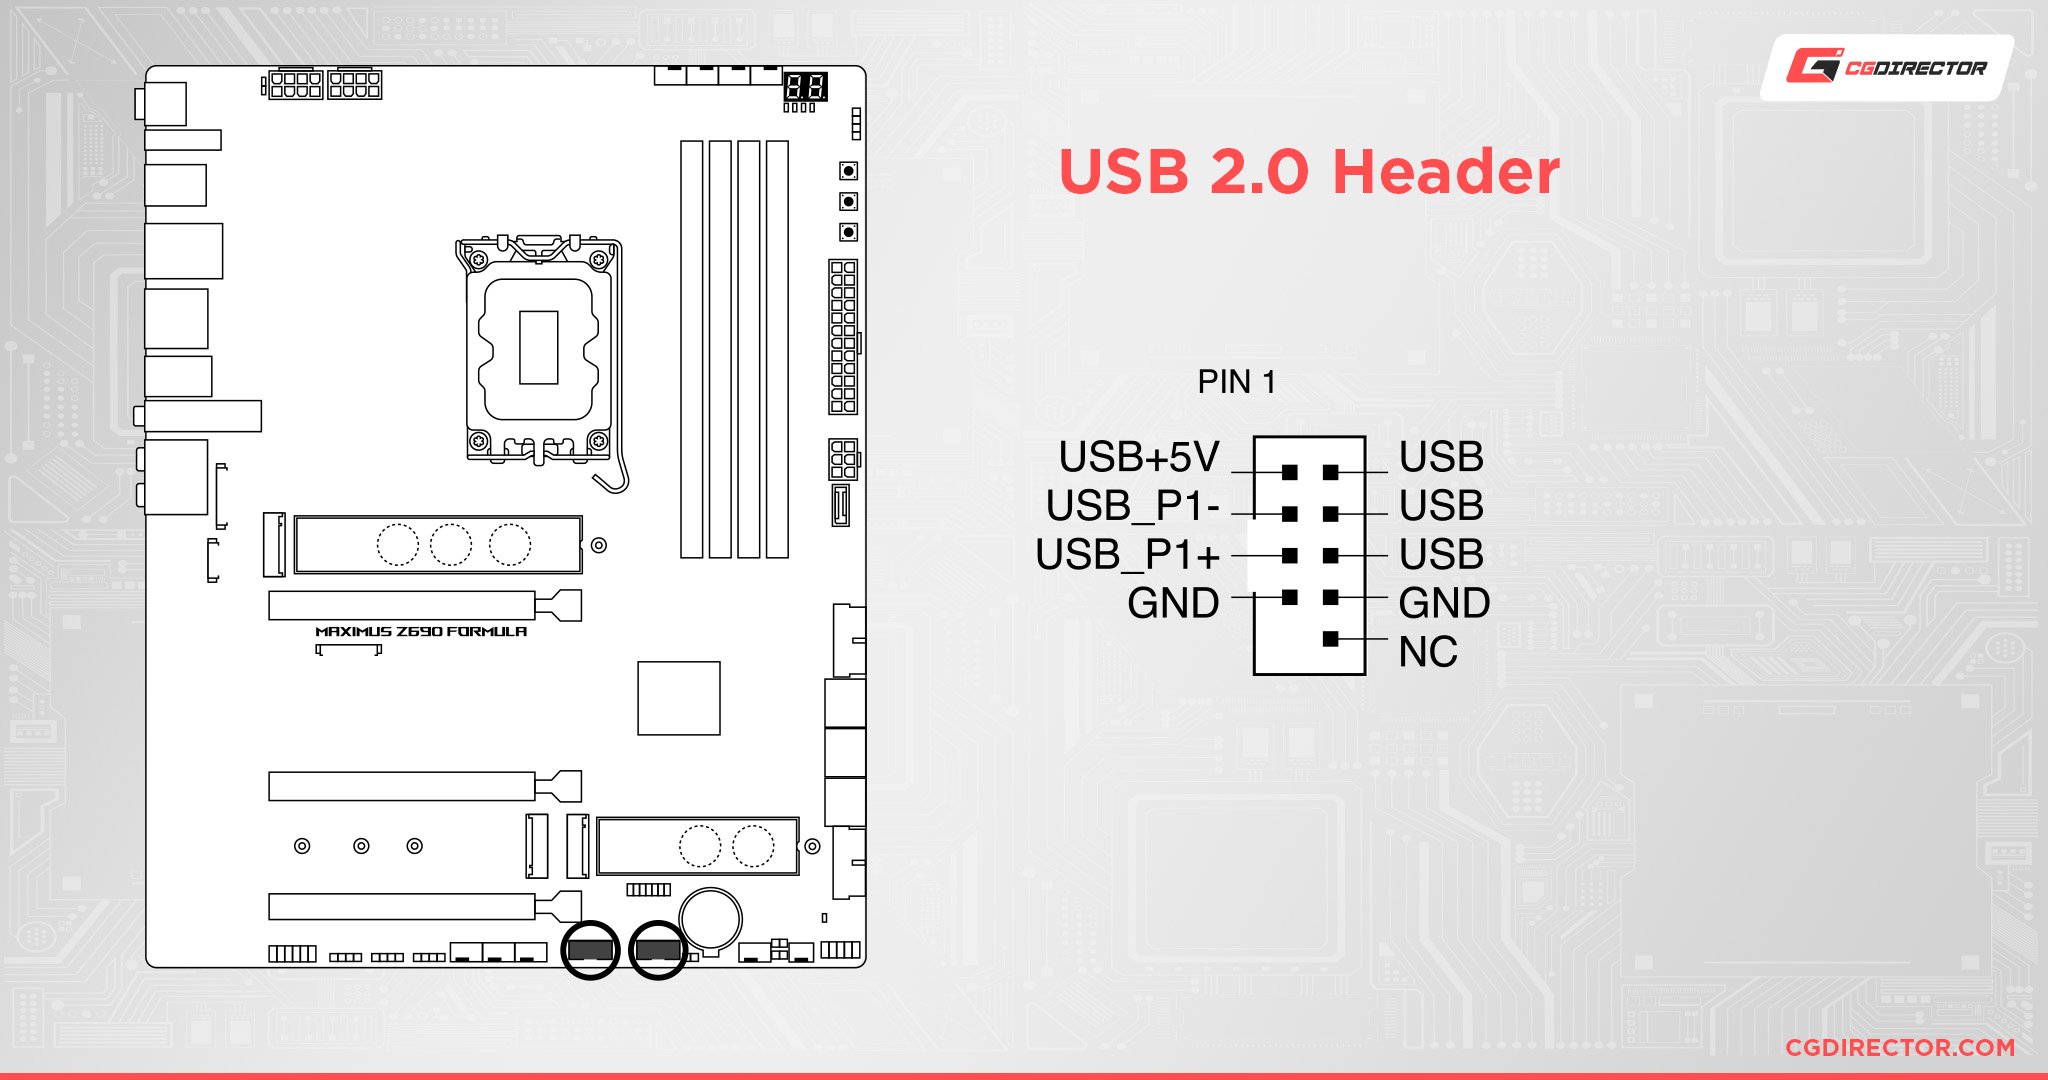 USB 2.0 Header